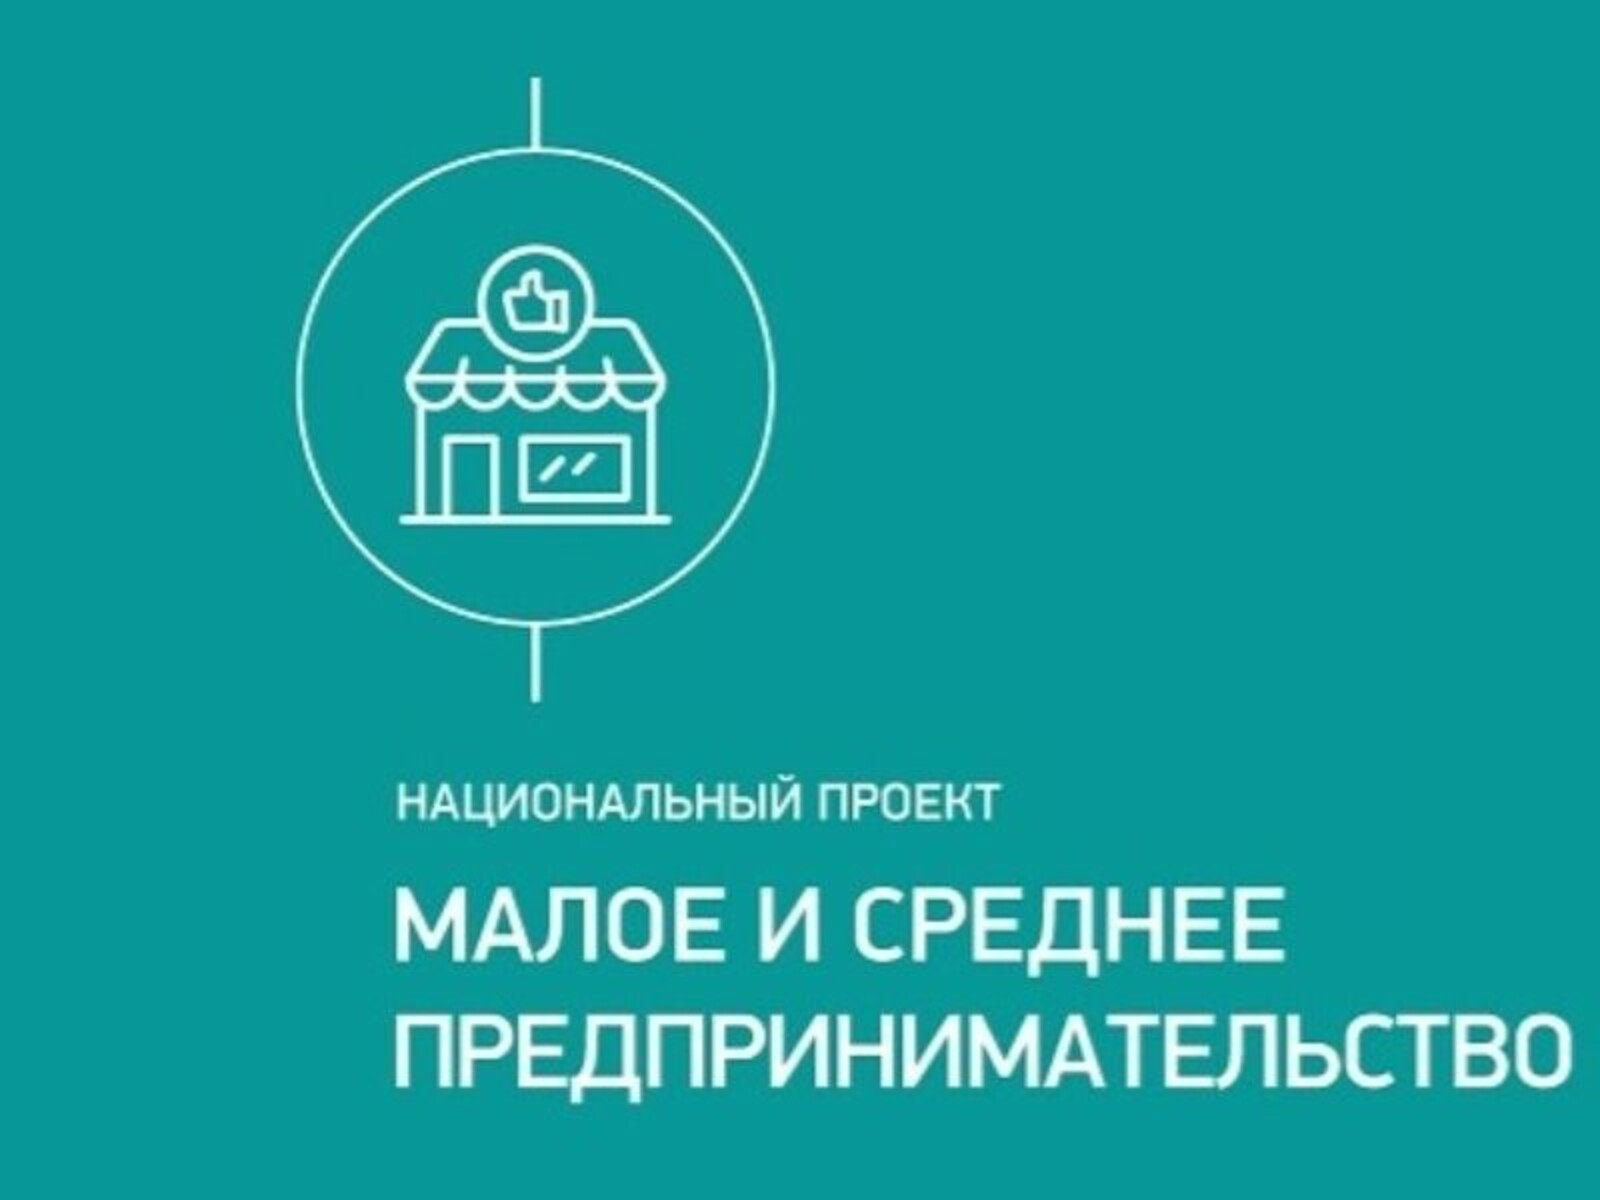 В Башкортостане пройдёт обучающая программа «7 ступеней управления»